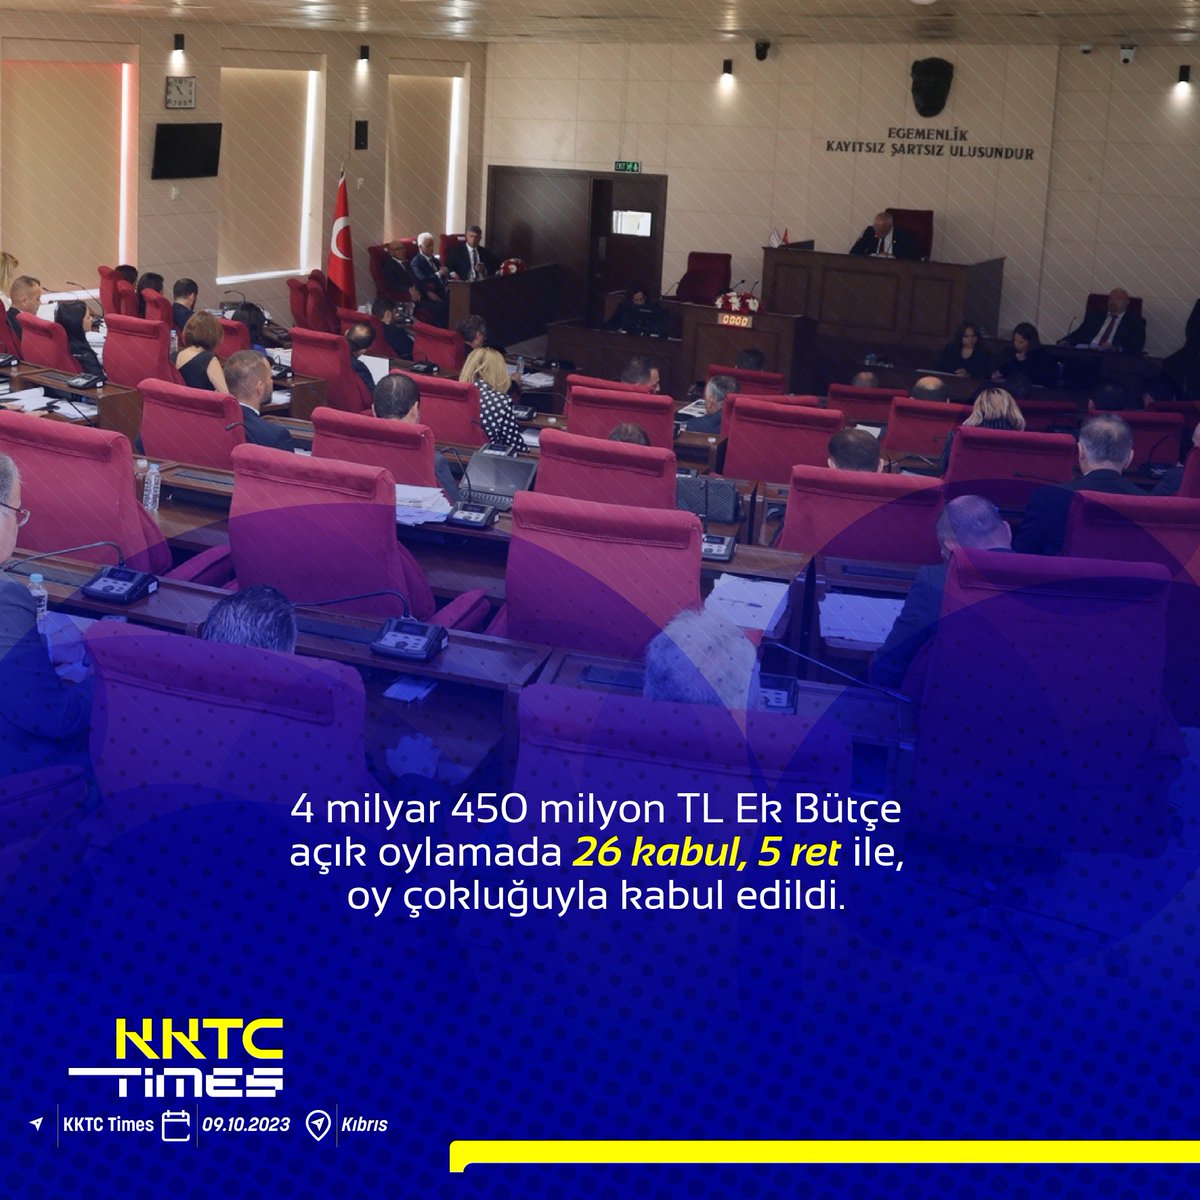 4 milyar 450 milyon TL Ek Bütçe açık oylamada 26 kabul, 5 ret ile, oy çokluğuyla kabul edildi.
#kktc #kıbrıs #ekbütçe #4milyar #kabul #ret #kıbrıshaber #kktctimes